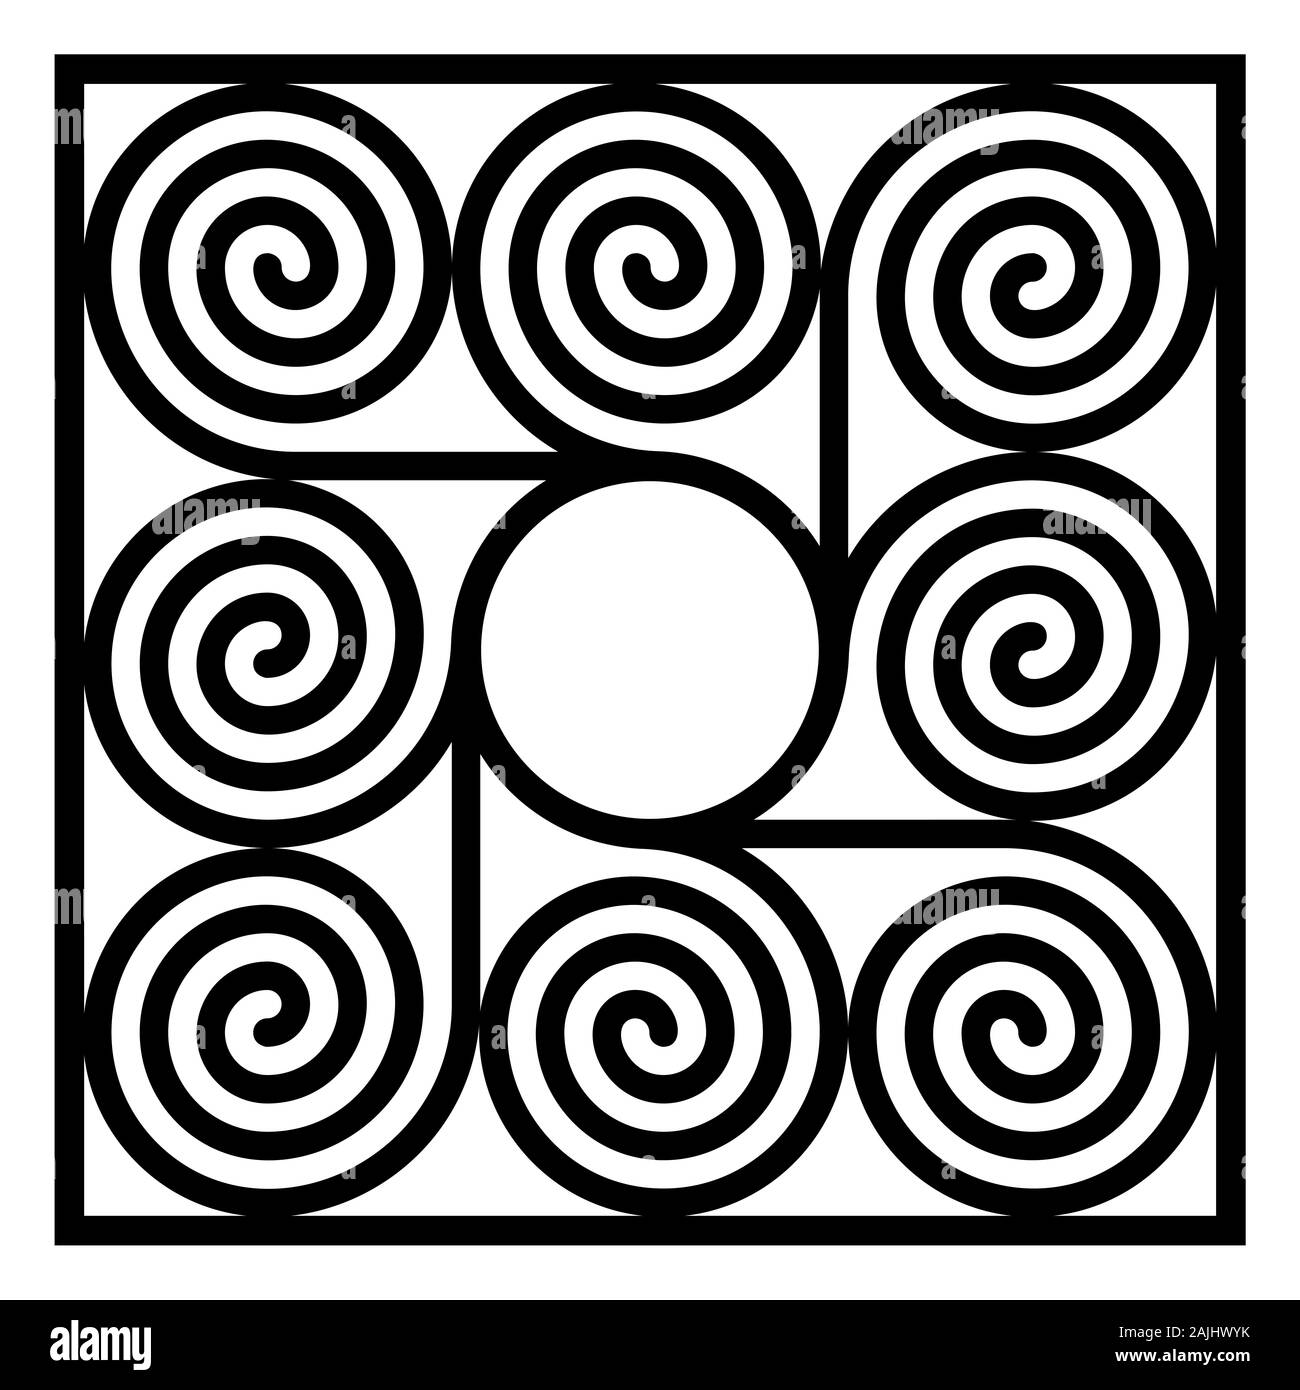 Tuile de forme carrée faite de huit spirales arithmétique autour d'un cercle. Schéma des spirales d'Archimède des mêmes intervalles connecté avec un cercle. Banque D'Images